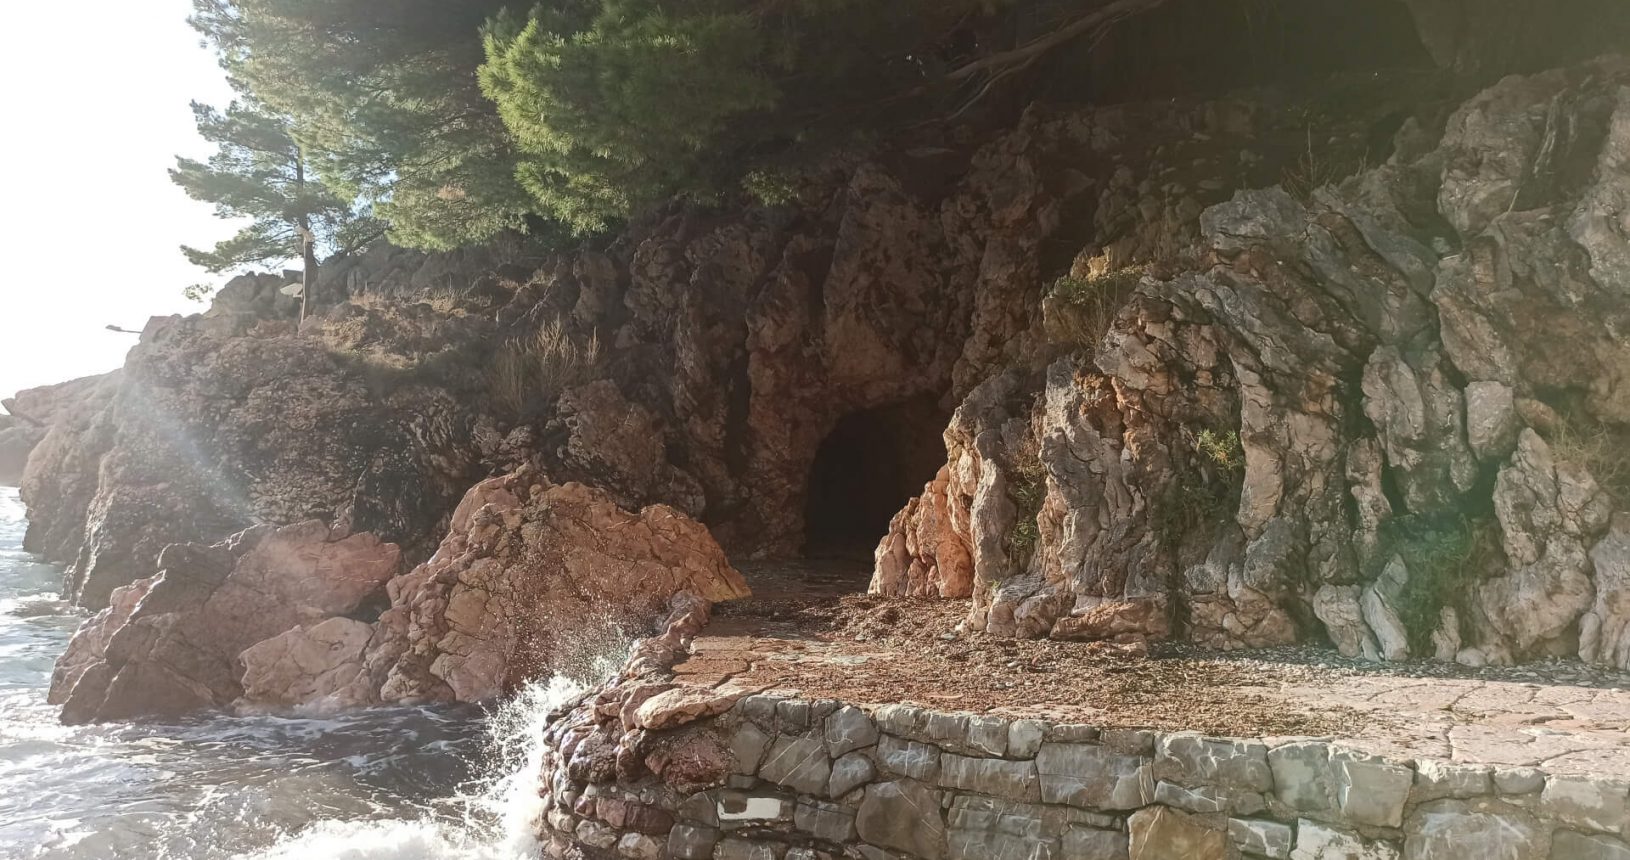 Stony cave in Park Milocer